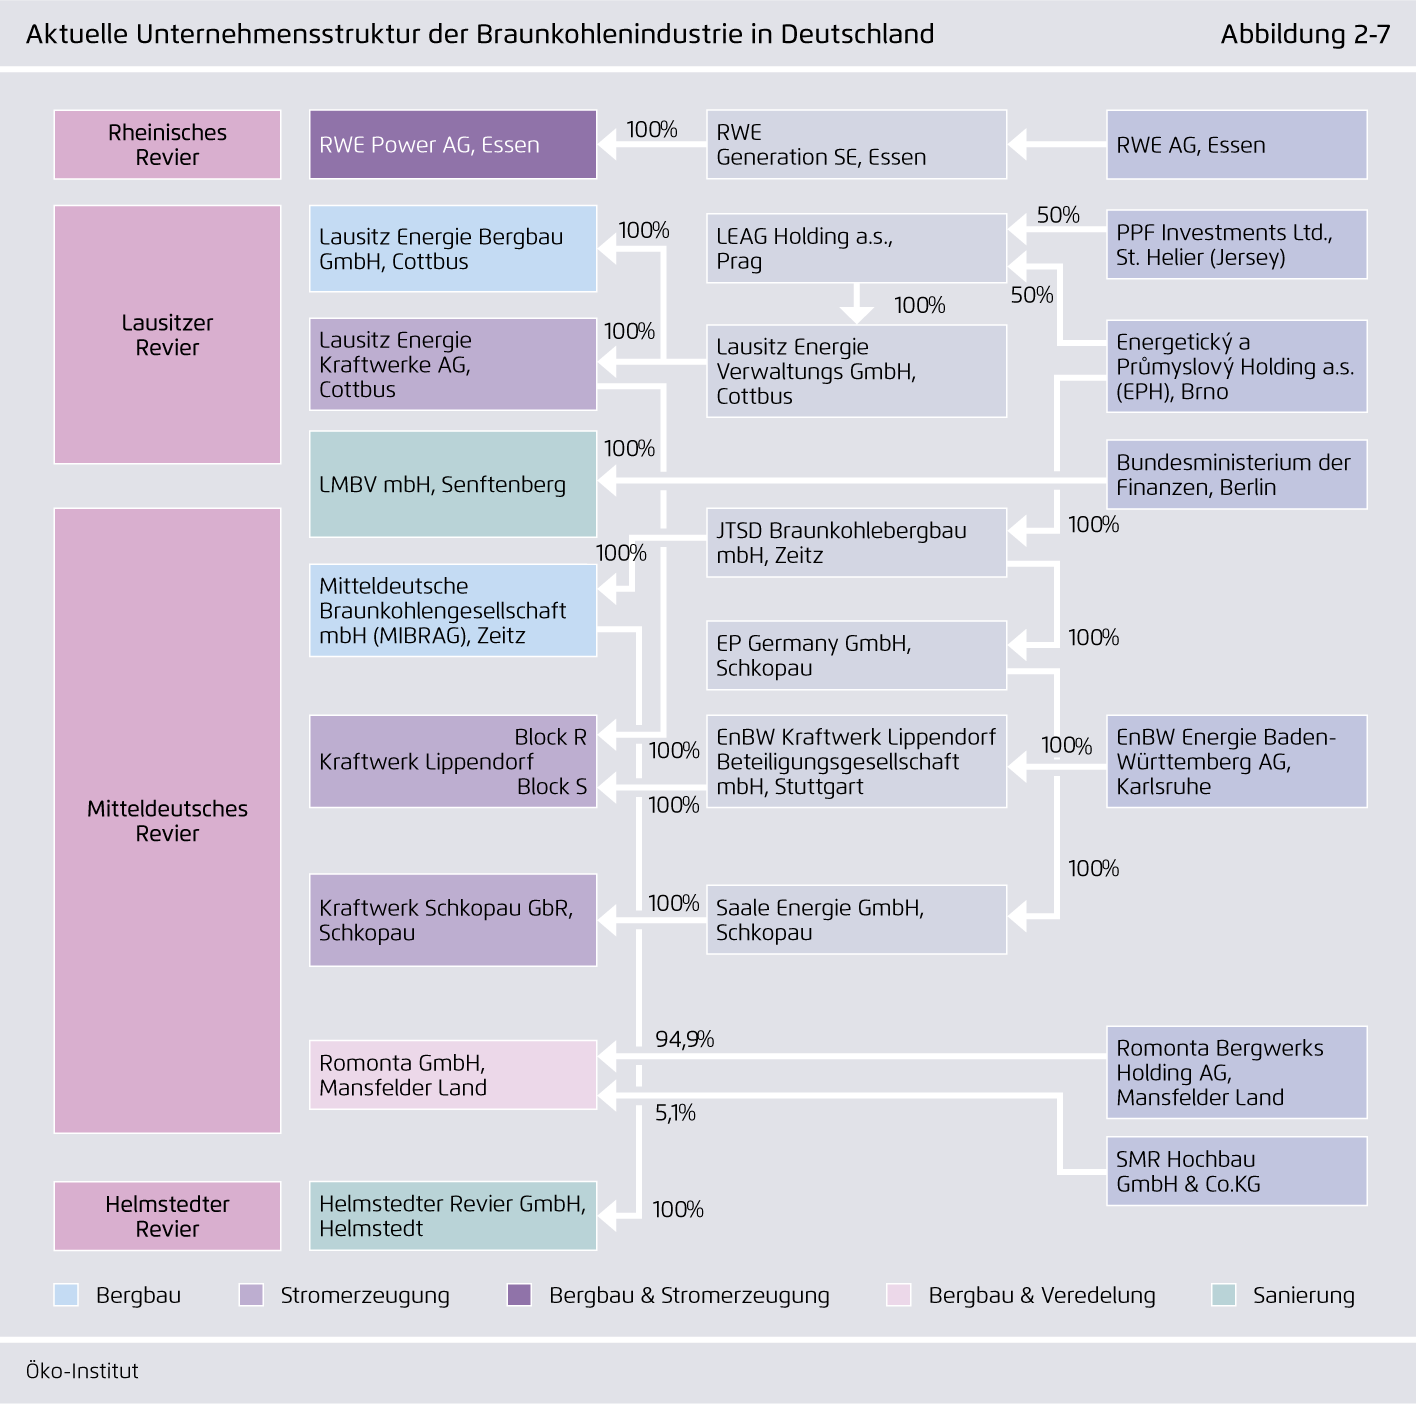 Preview for Aktuelle Unternehmensstruktur der Braunkohlenindustrie in Deutschland